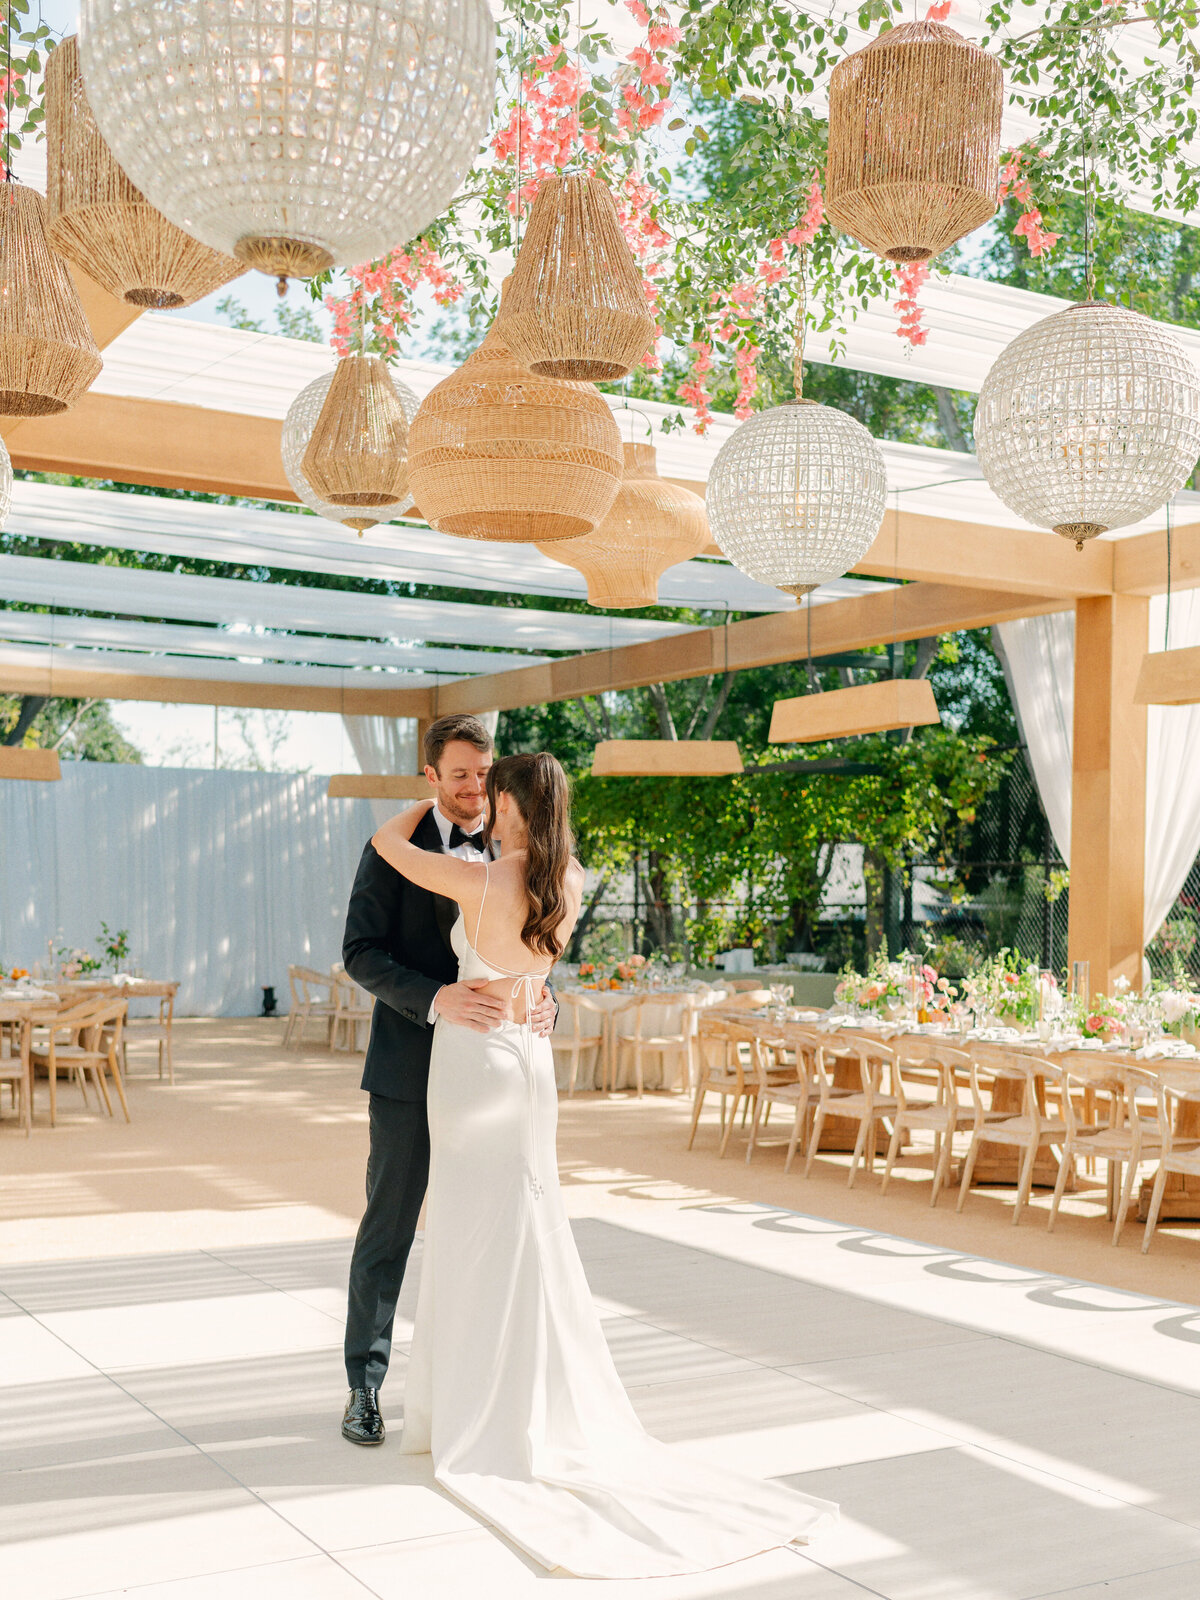 Private Estate Wedding in Ojai, California - 146